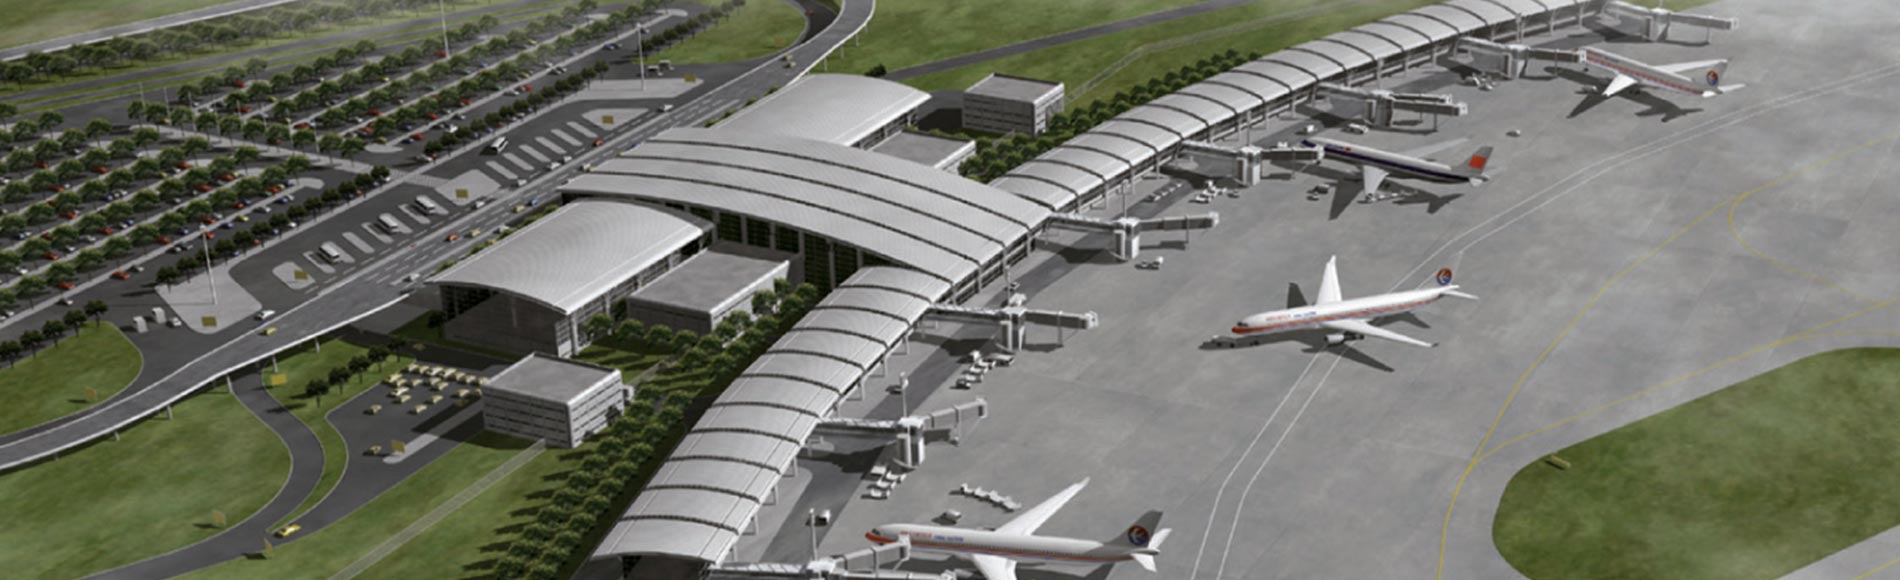 قريباً بناء مطار جديد يتناسب مع طموحات المنطقة الحرة